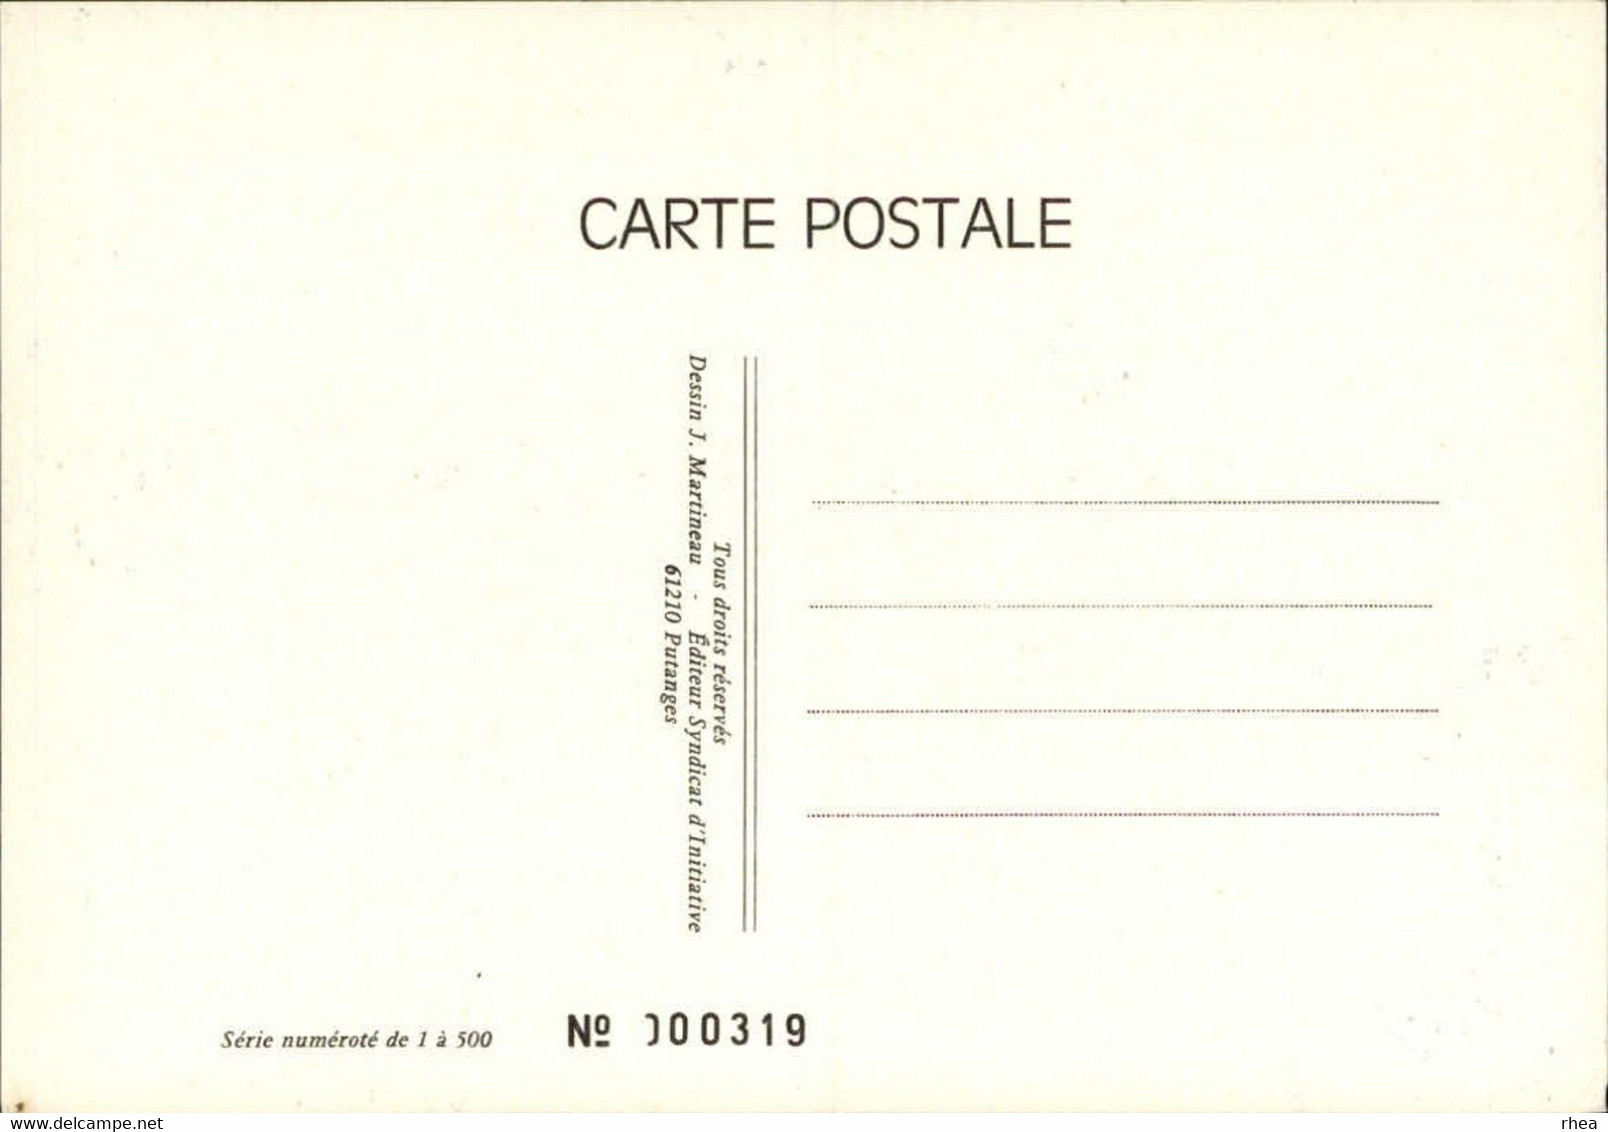 SALONS DE COLLECTIONS - Salon De Cartes Postales -  PUTANGES - Exposition De Cartes - 1980 - Bourses & Salons De Collections